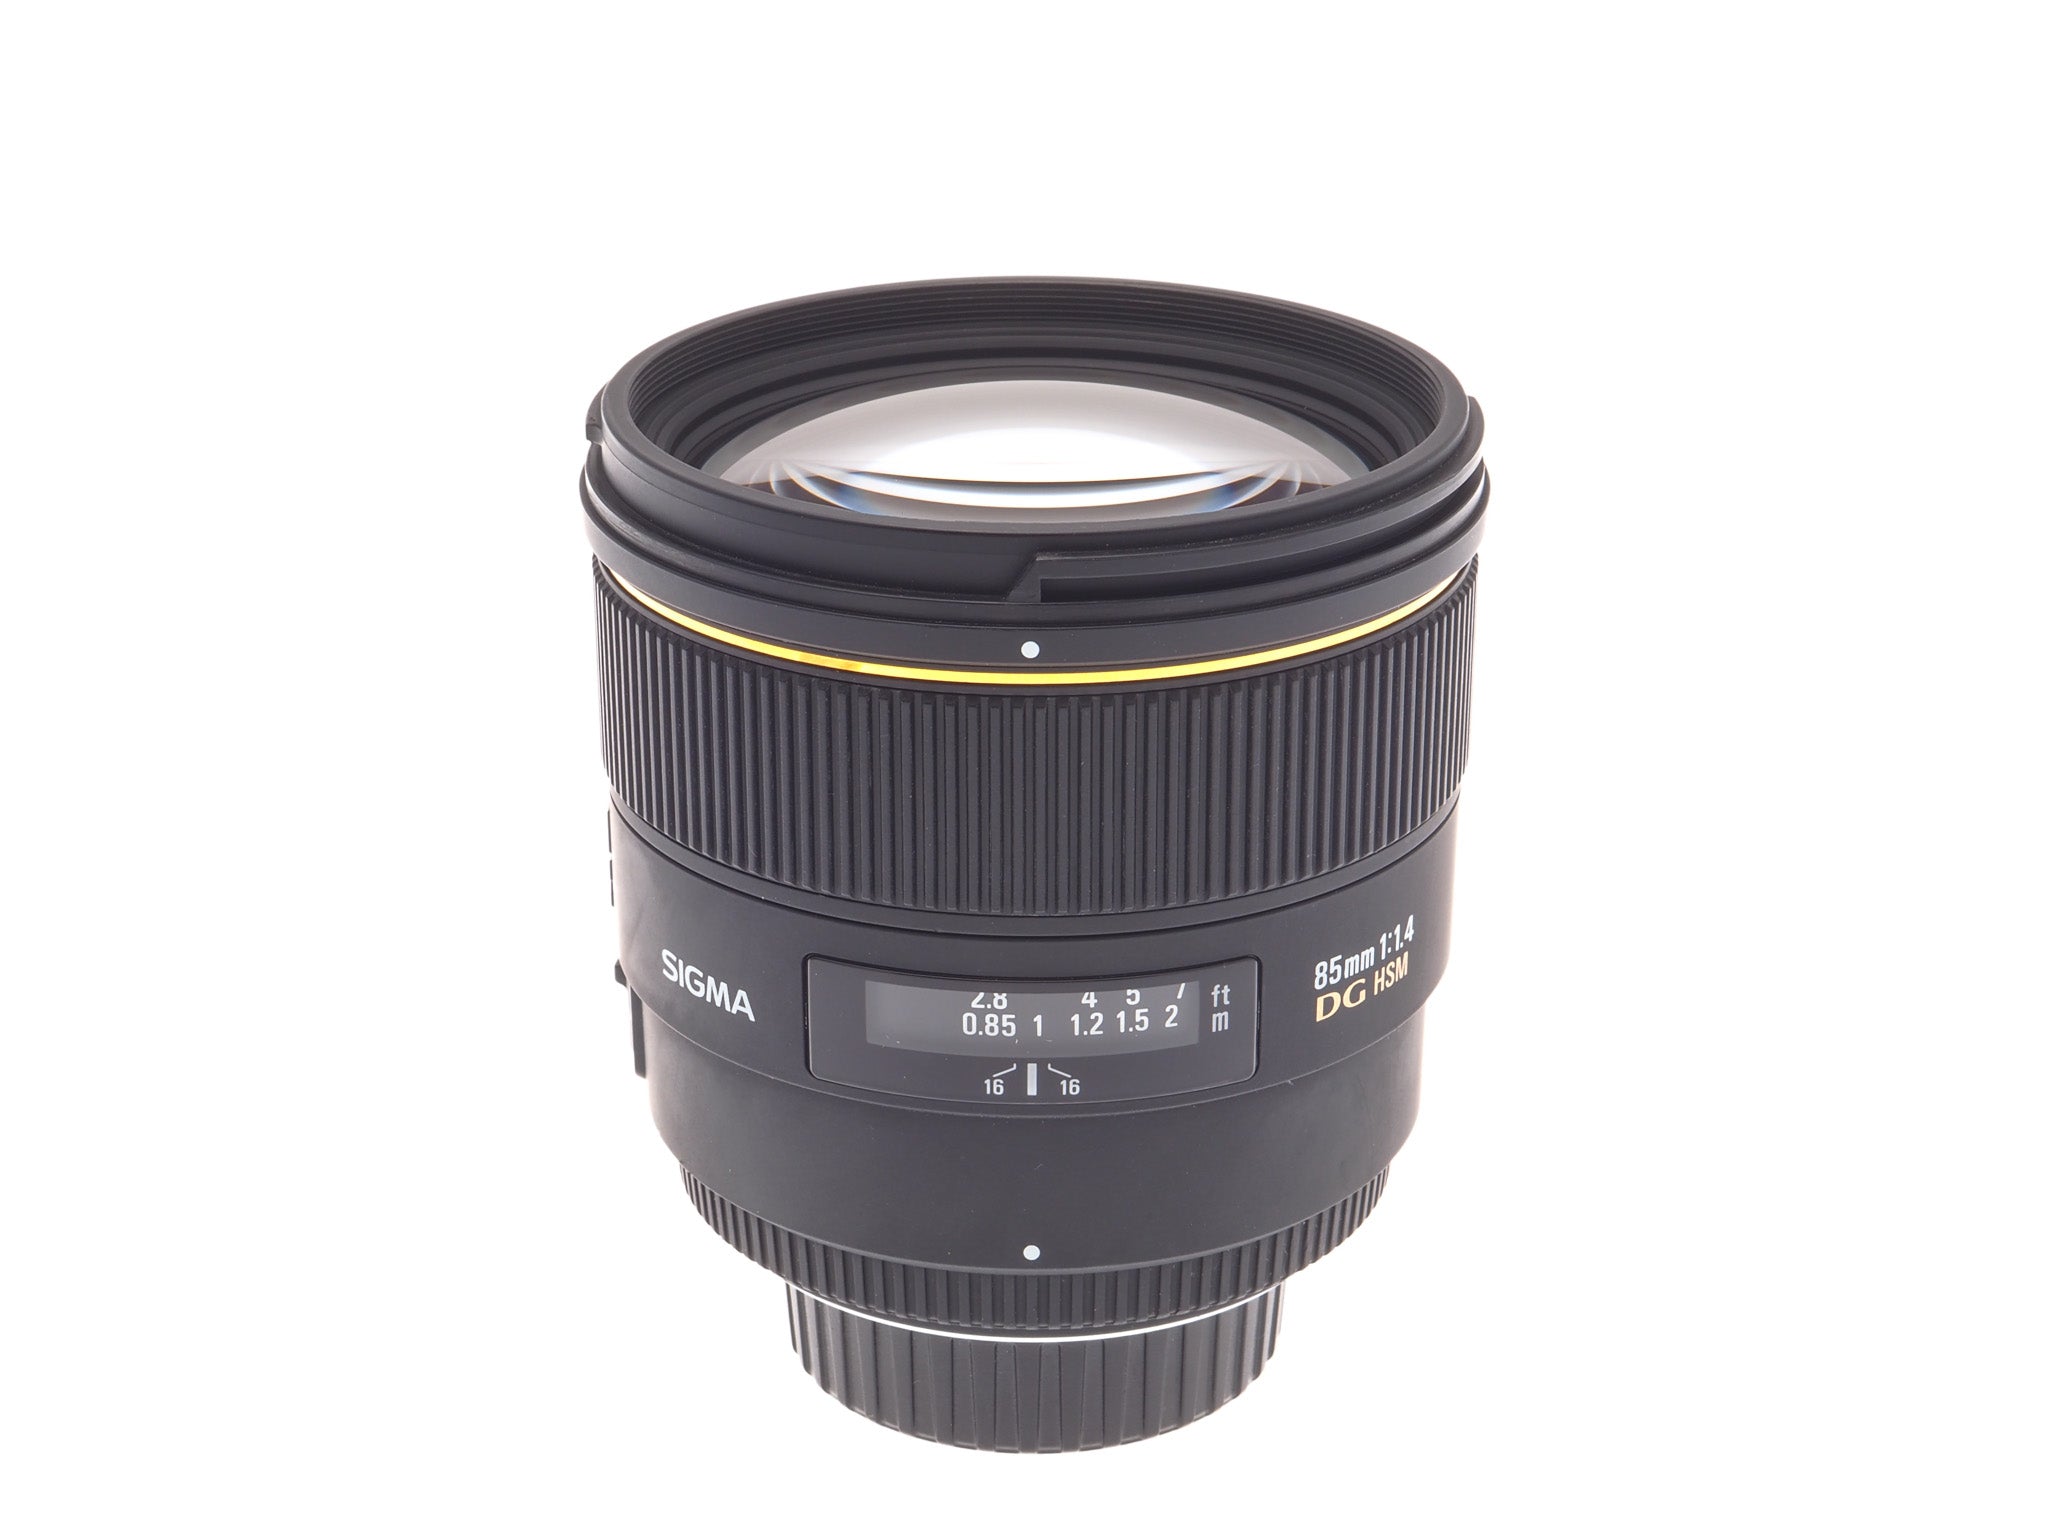 Sigma 85mm f1.4 EX DG HSM - Lens